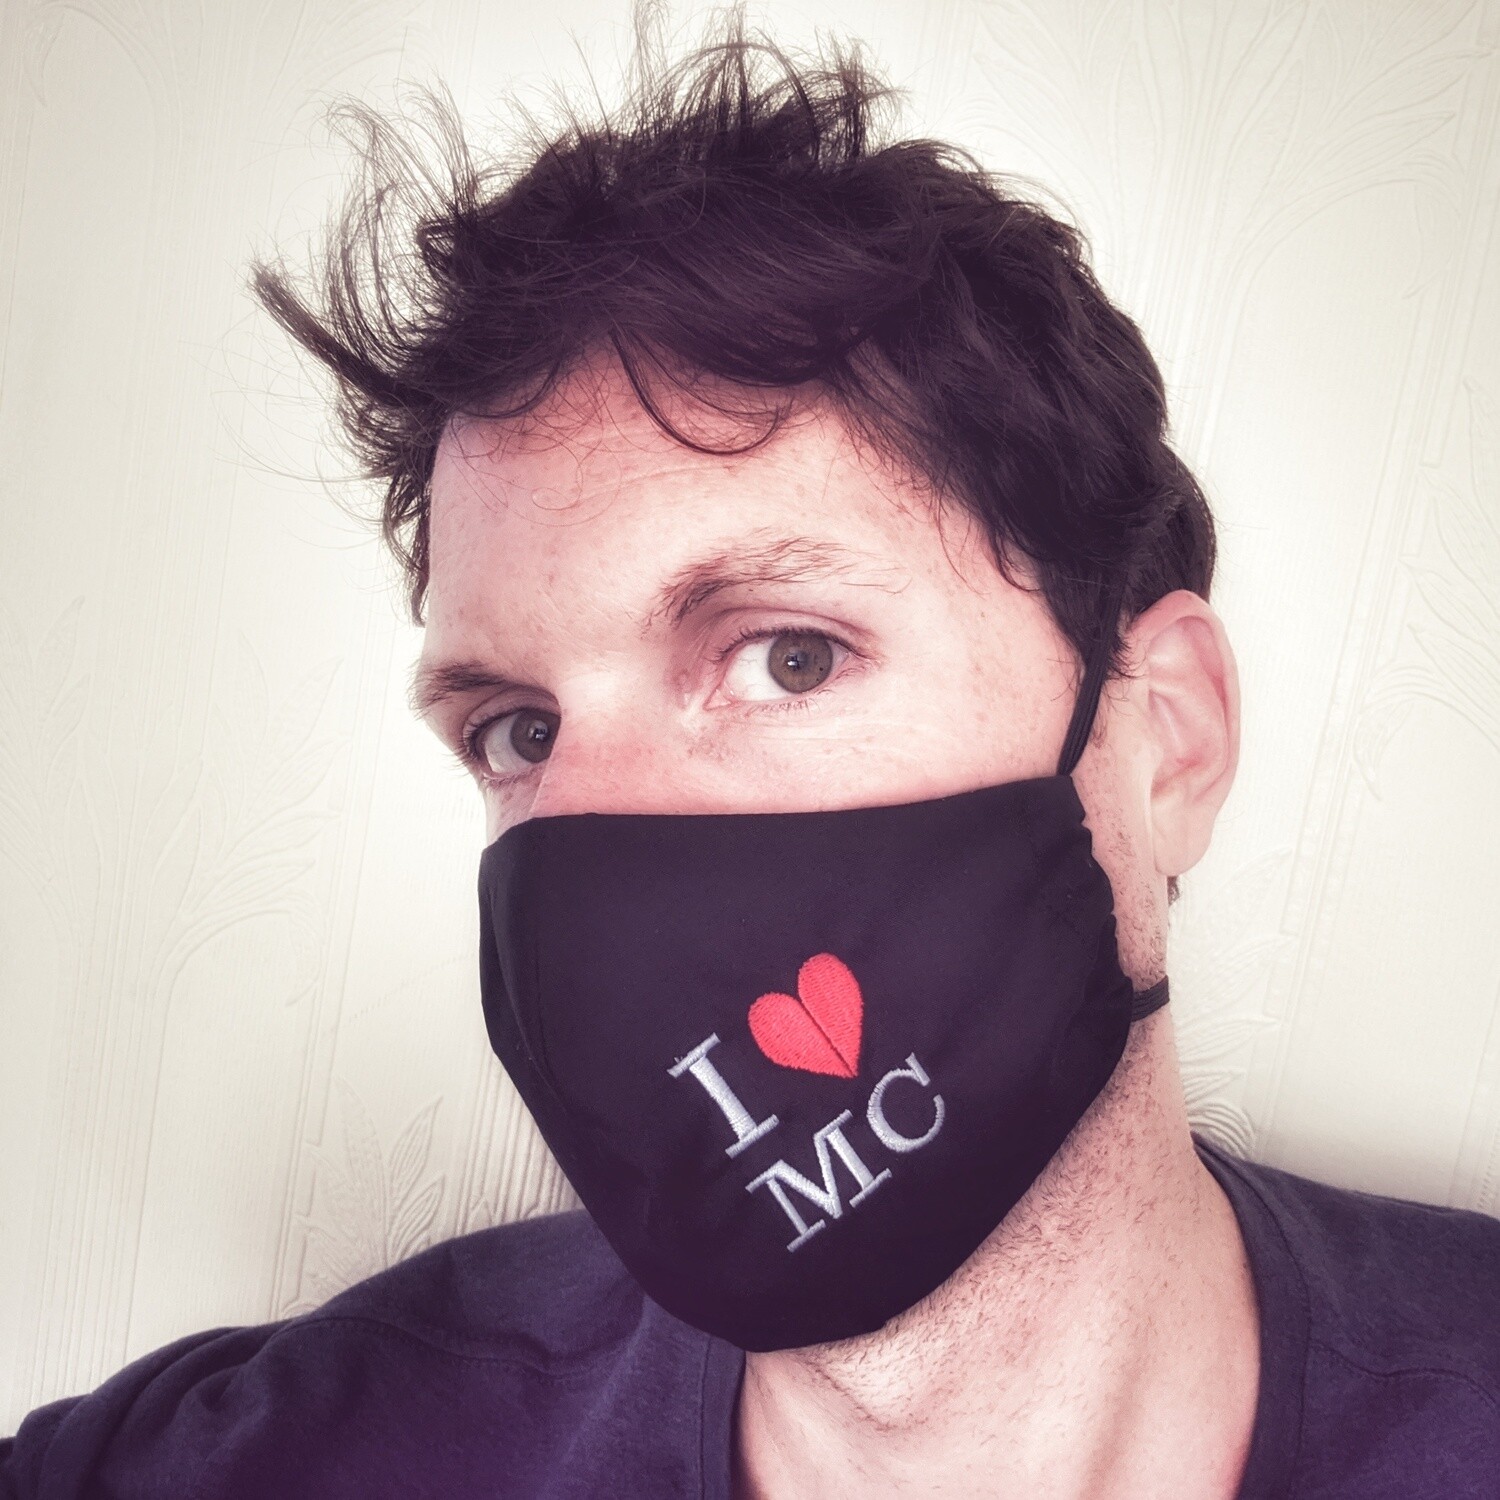 'I ♥ MC' Face Mask - Free P&P!